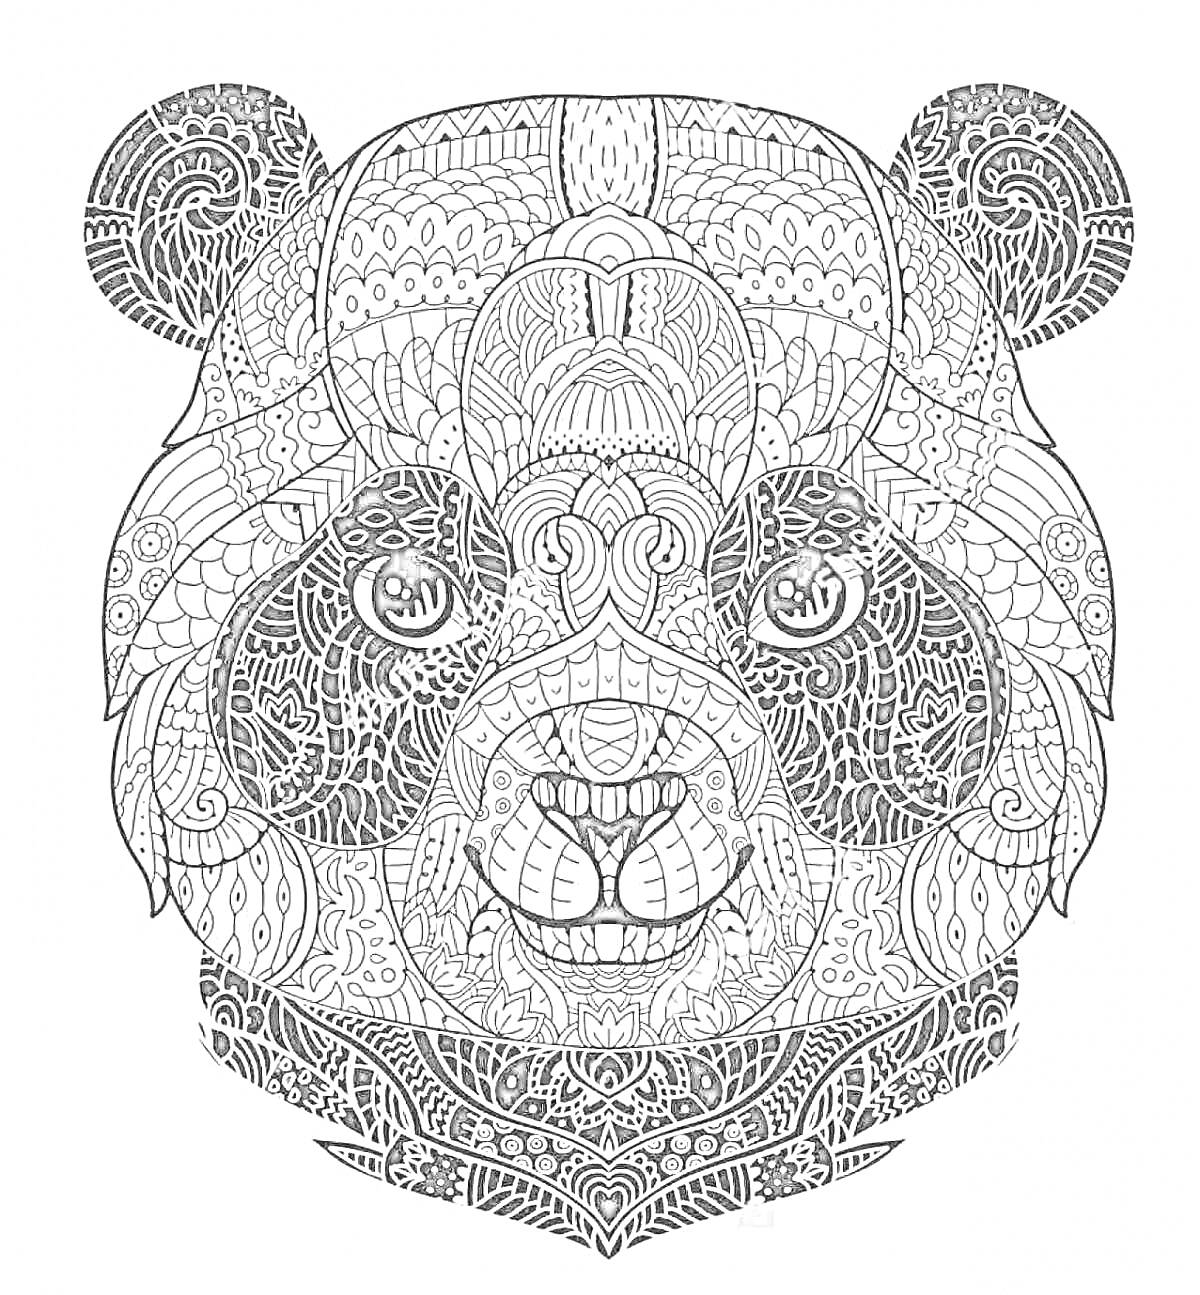 Раскраска Антистресс раскраска - детализированное изображение панду с узорами и орнаментом